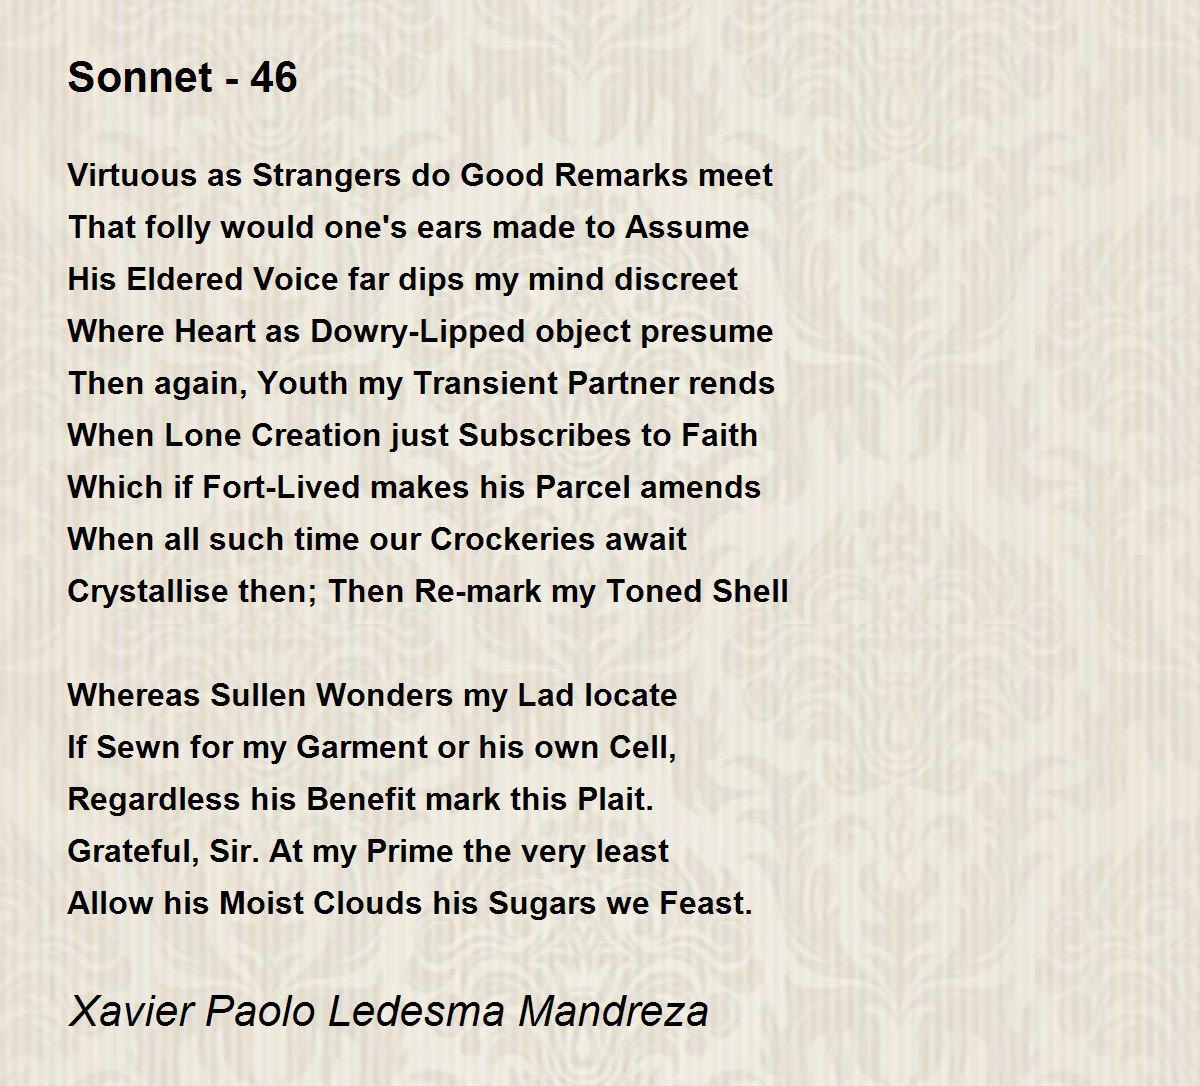 sonnet 46